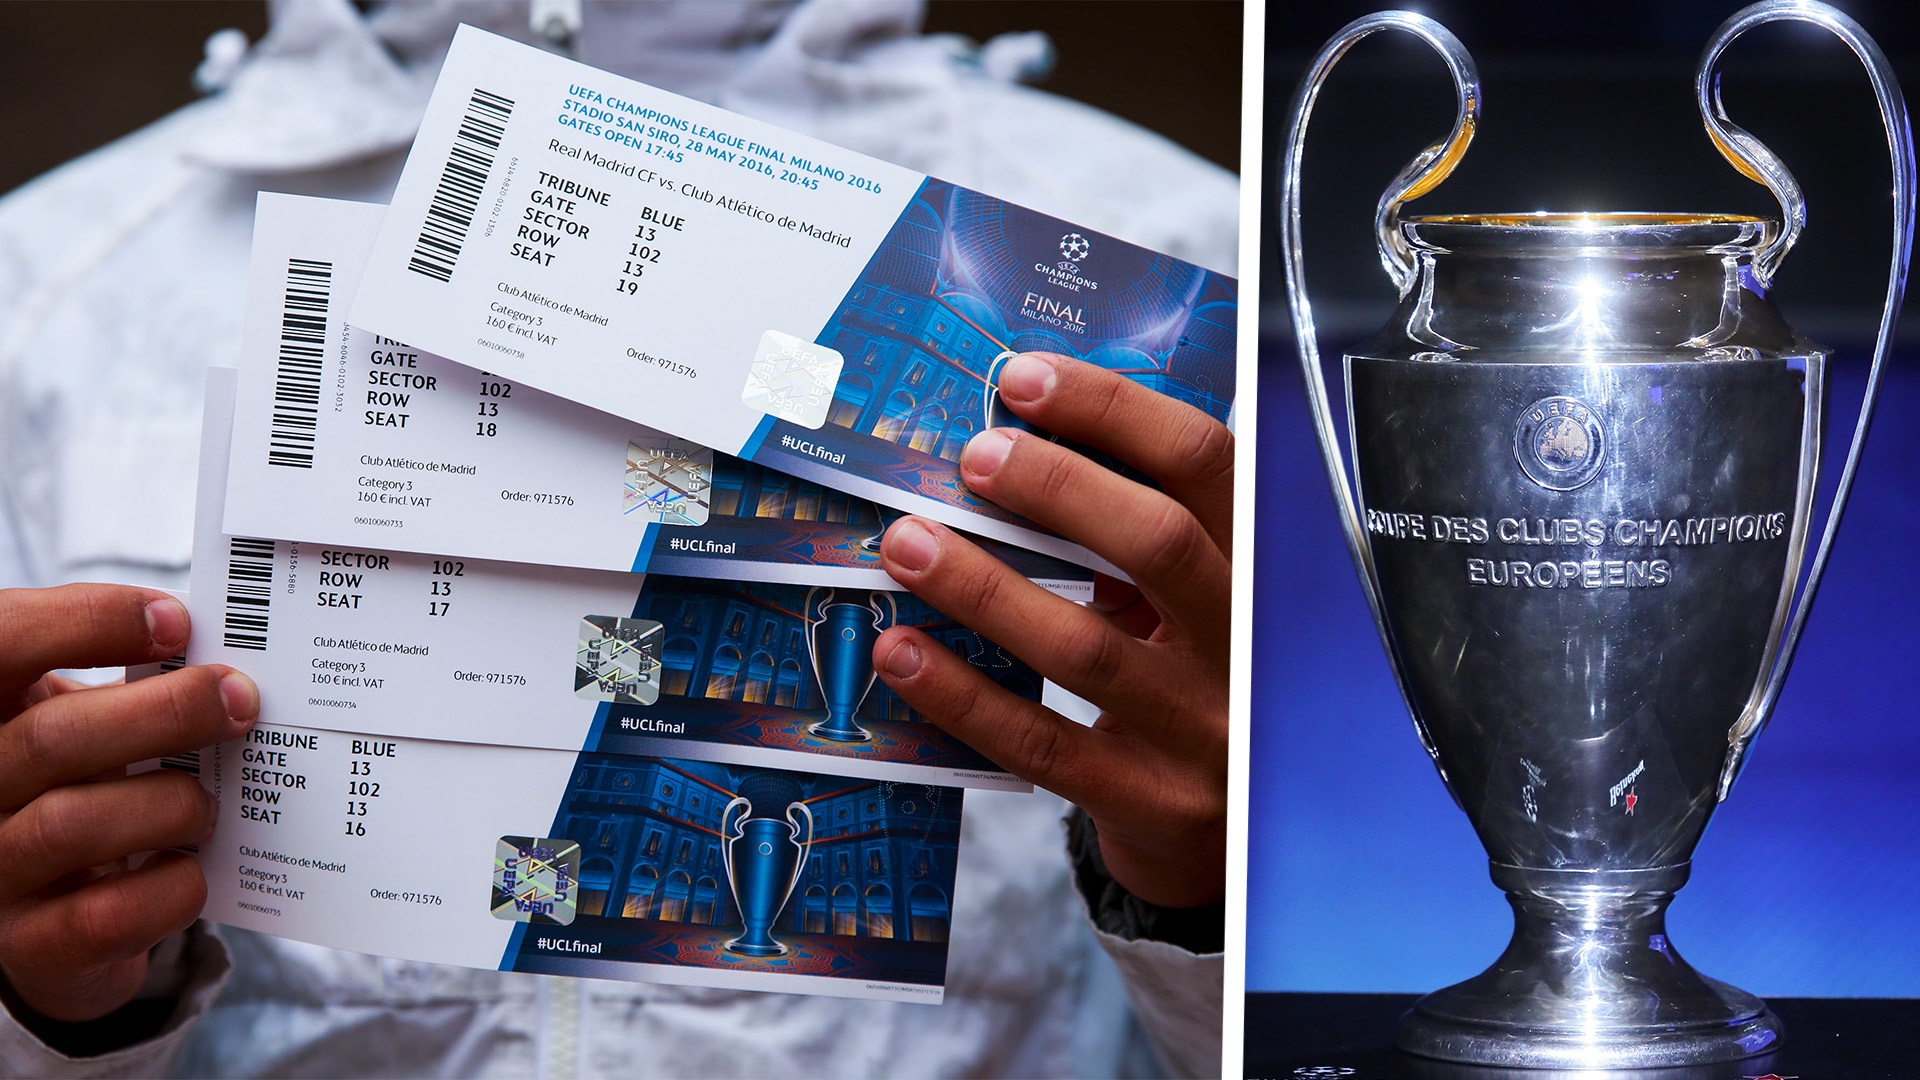 Уефа билеты. UEFA Champions League tickets Final. Champions League Final tickets. UEFA tickets Champions League. Билет на Лигу чемпионов.